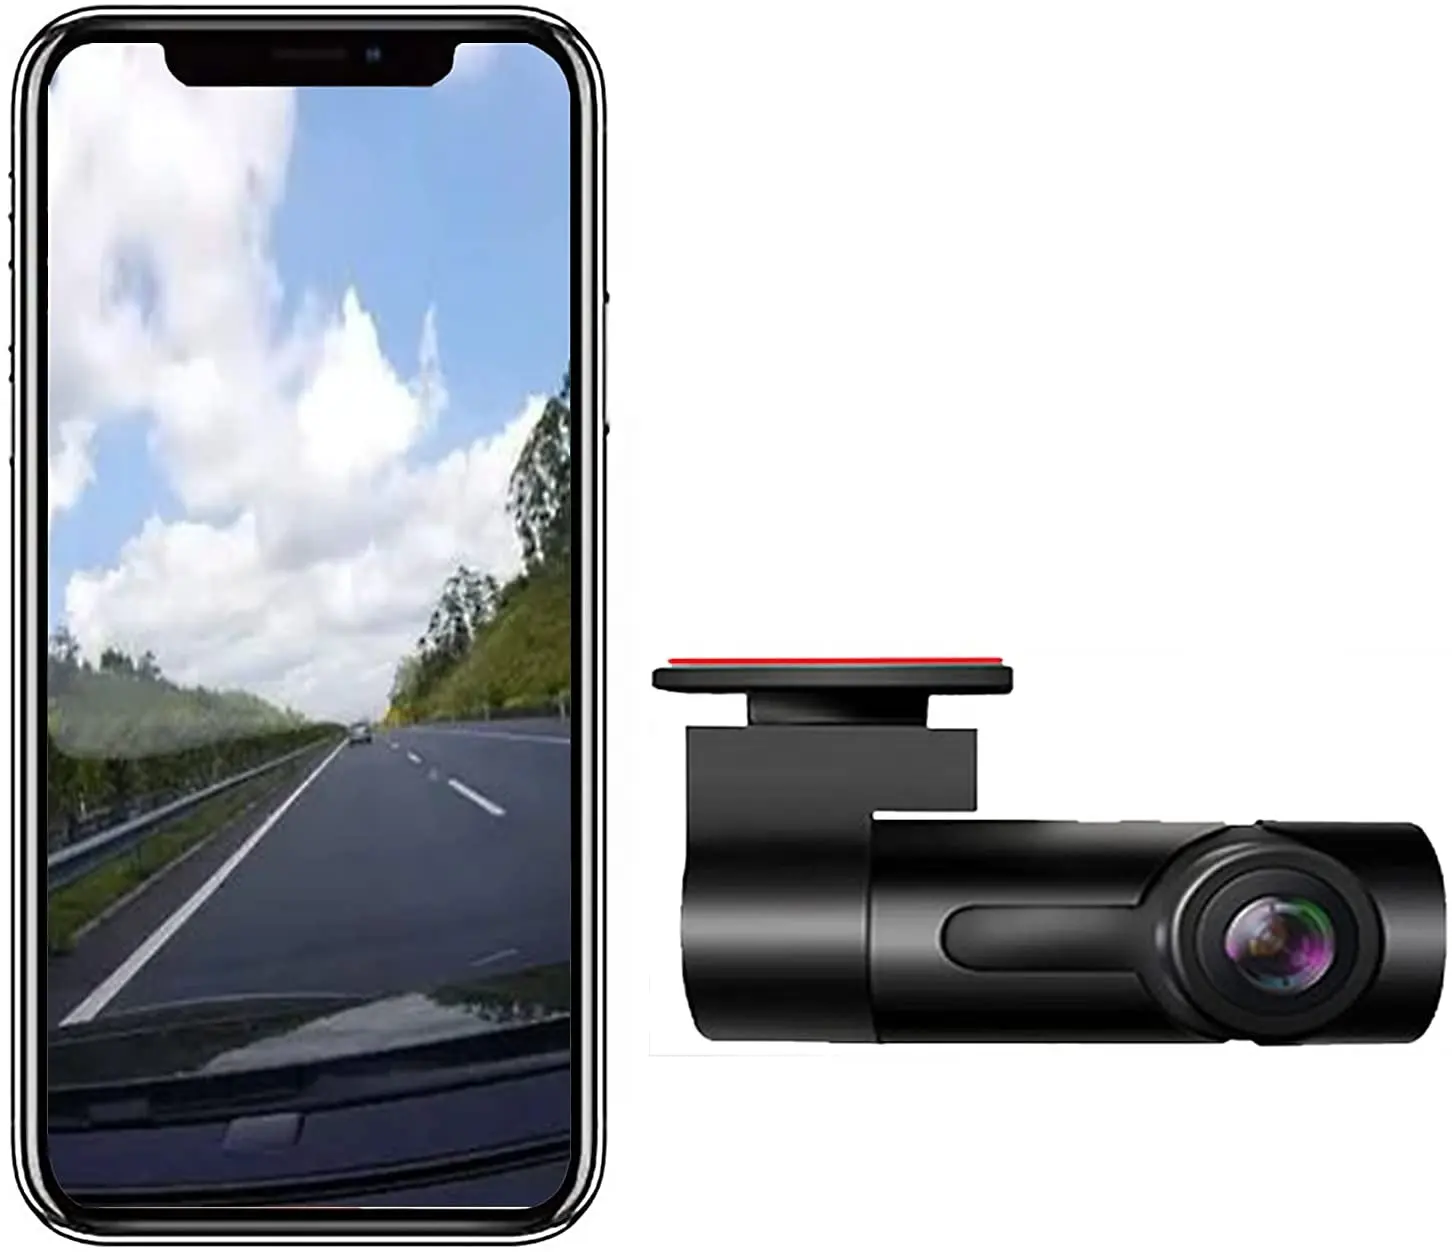 Vendita calda 1080p Wifi Full HD Car Dash Camera No Screen Car recorder specchio nascosto veicolo scatola nera per la guida di Video Record